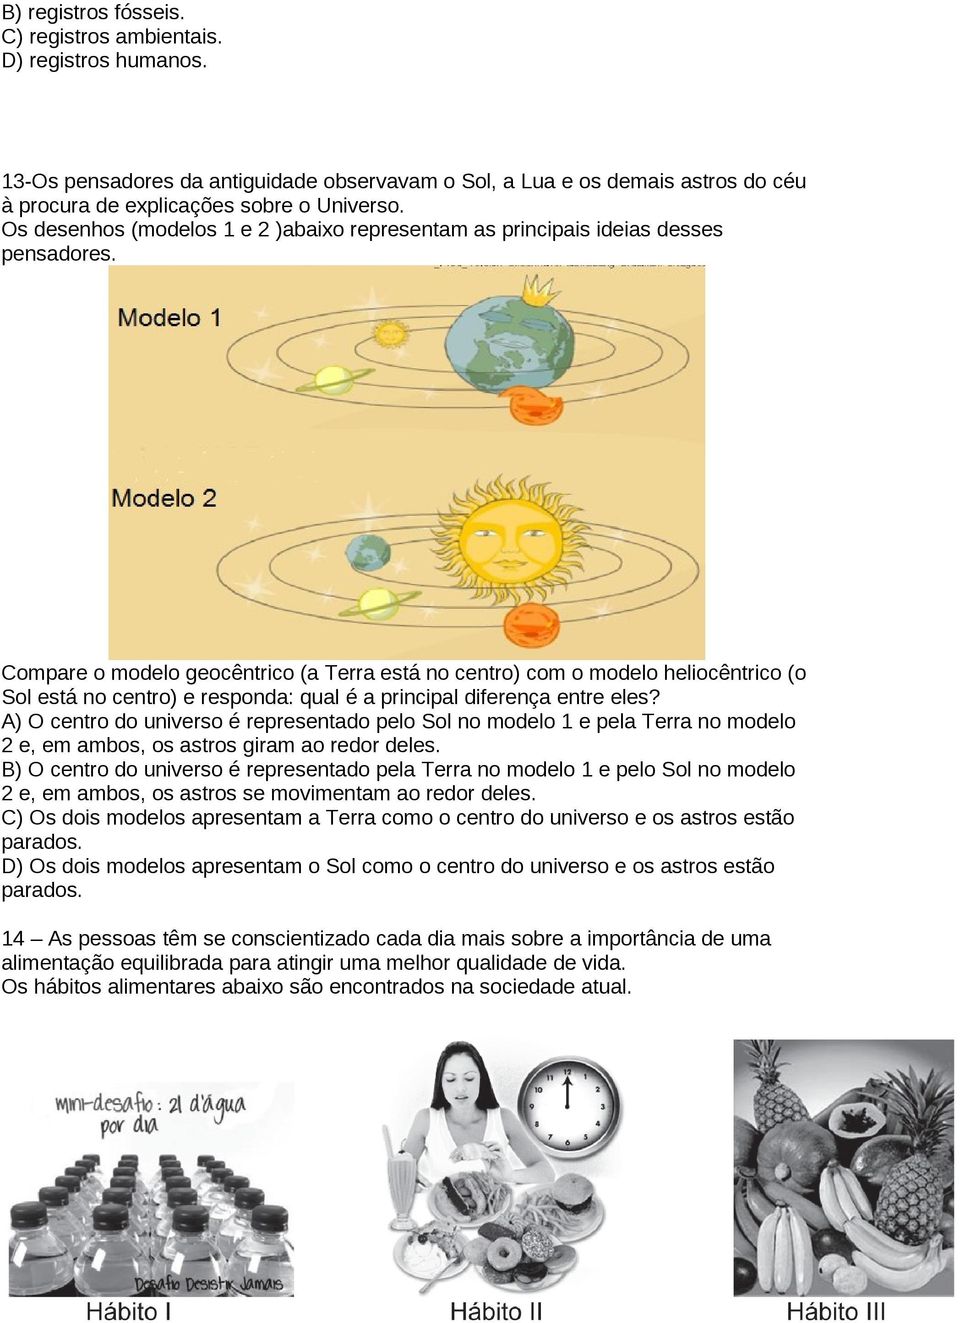 Compare o modelo geocêntrico (a Terra está no centro) com o modelo heliocêntrico (o Sol está no centro) e responda: qual é a principal diferença entre eles?